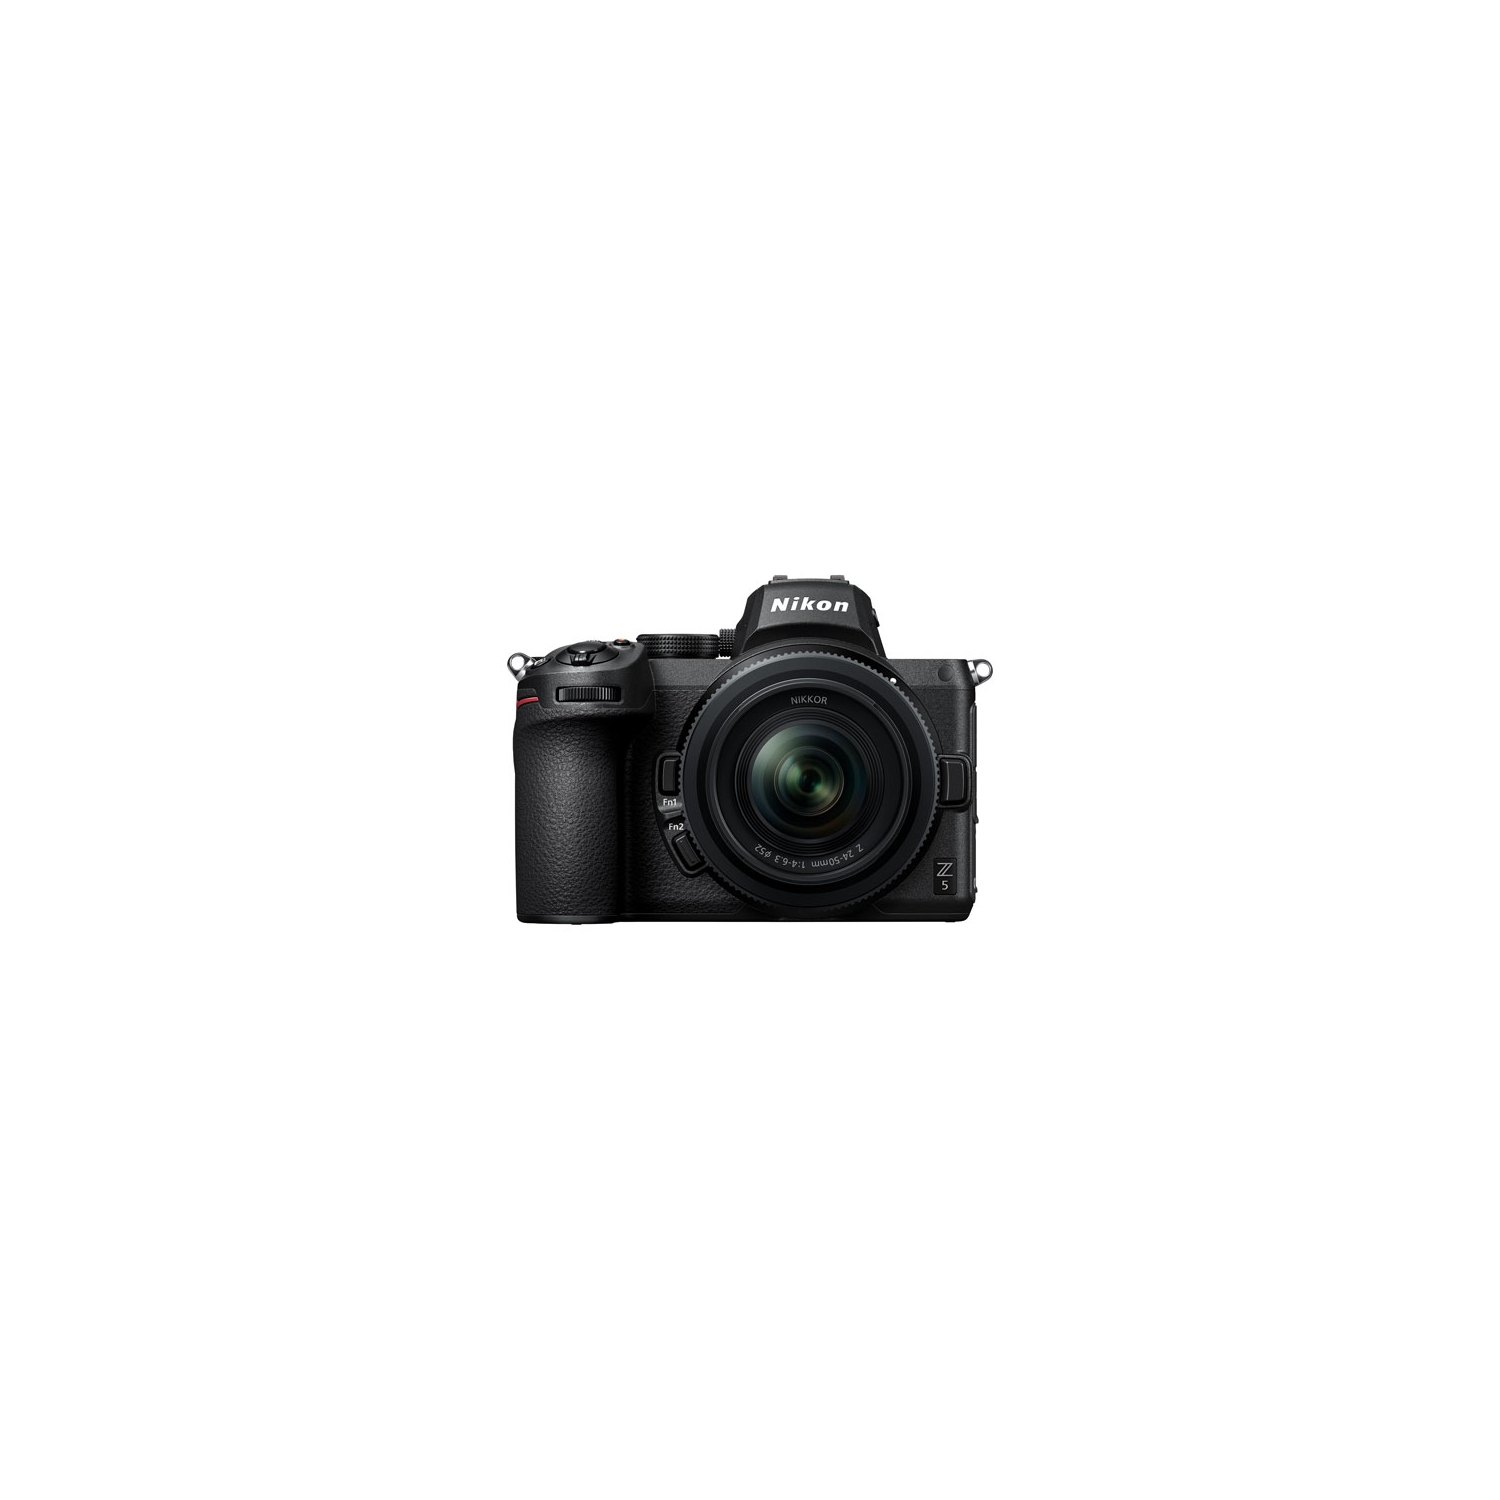 Nikon Z 5 Full-Frame Mirrorless Camera with NIKKOR Z 24-50mm Lens Kit - Open Box